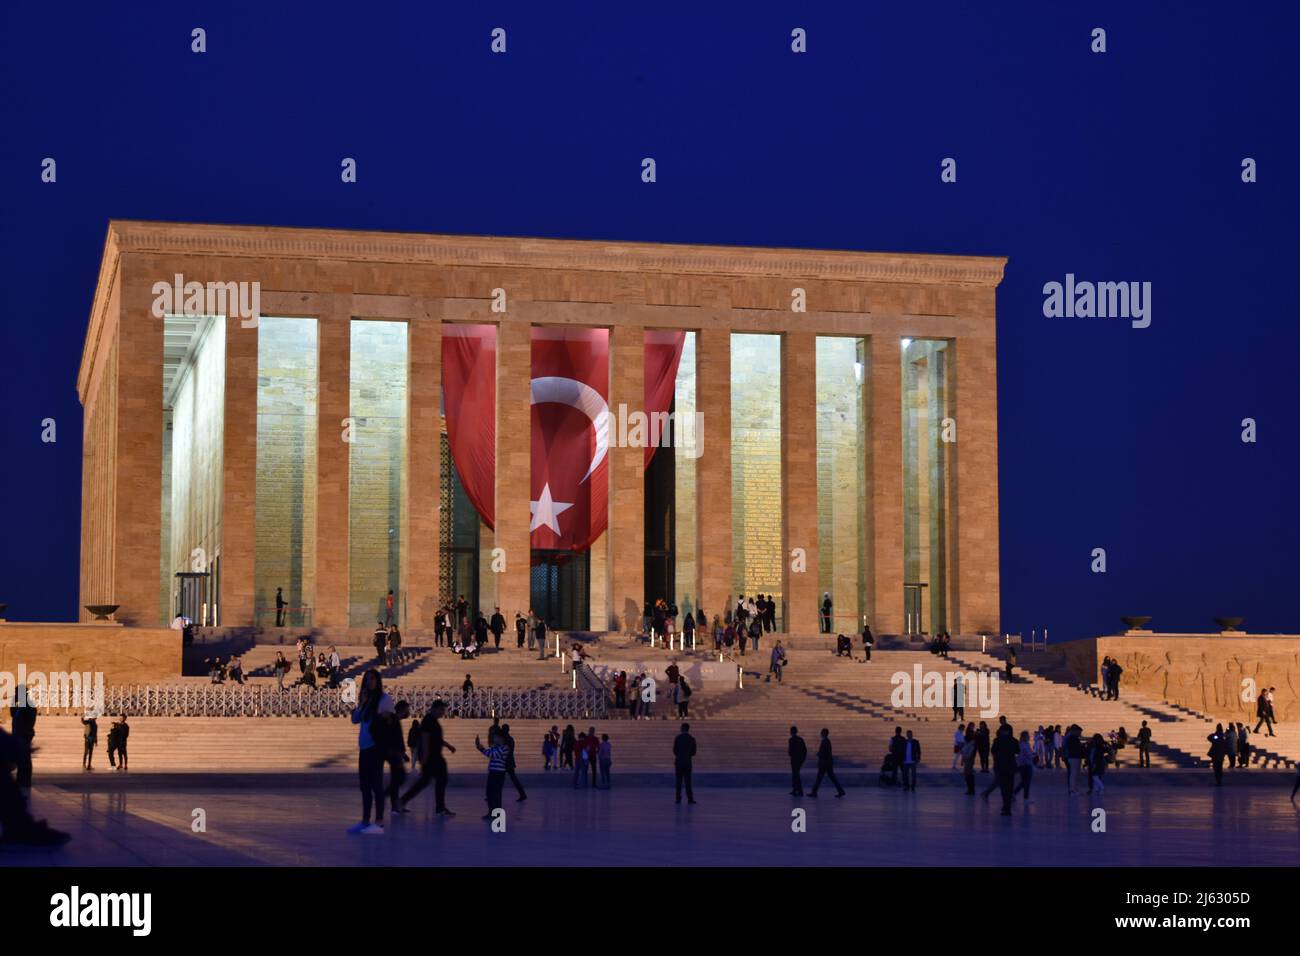 Vue nocturne du mausolée d'Atatürk à Ankara, Turquie Banque D'Images